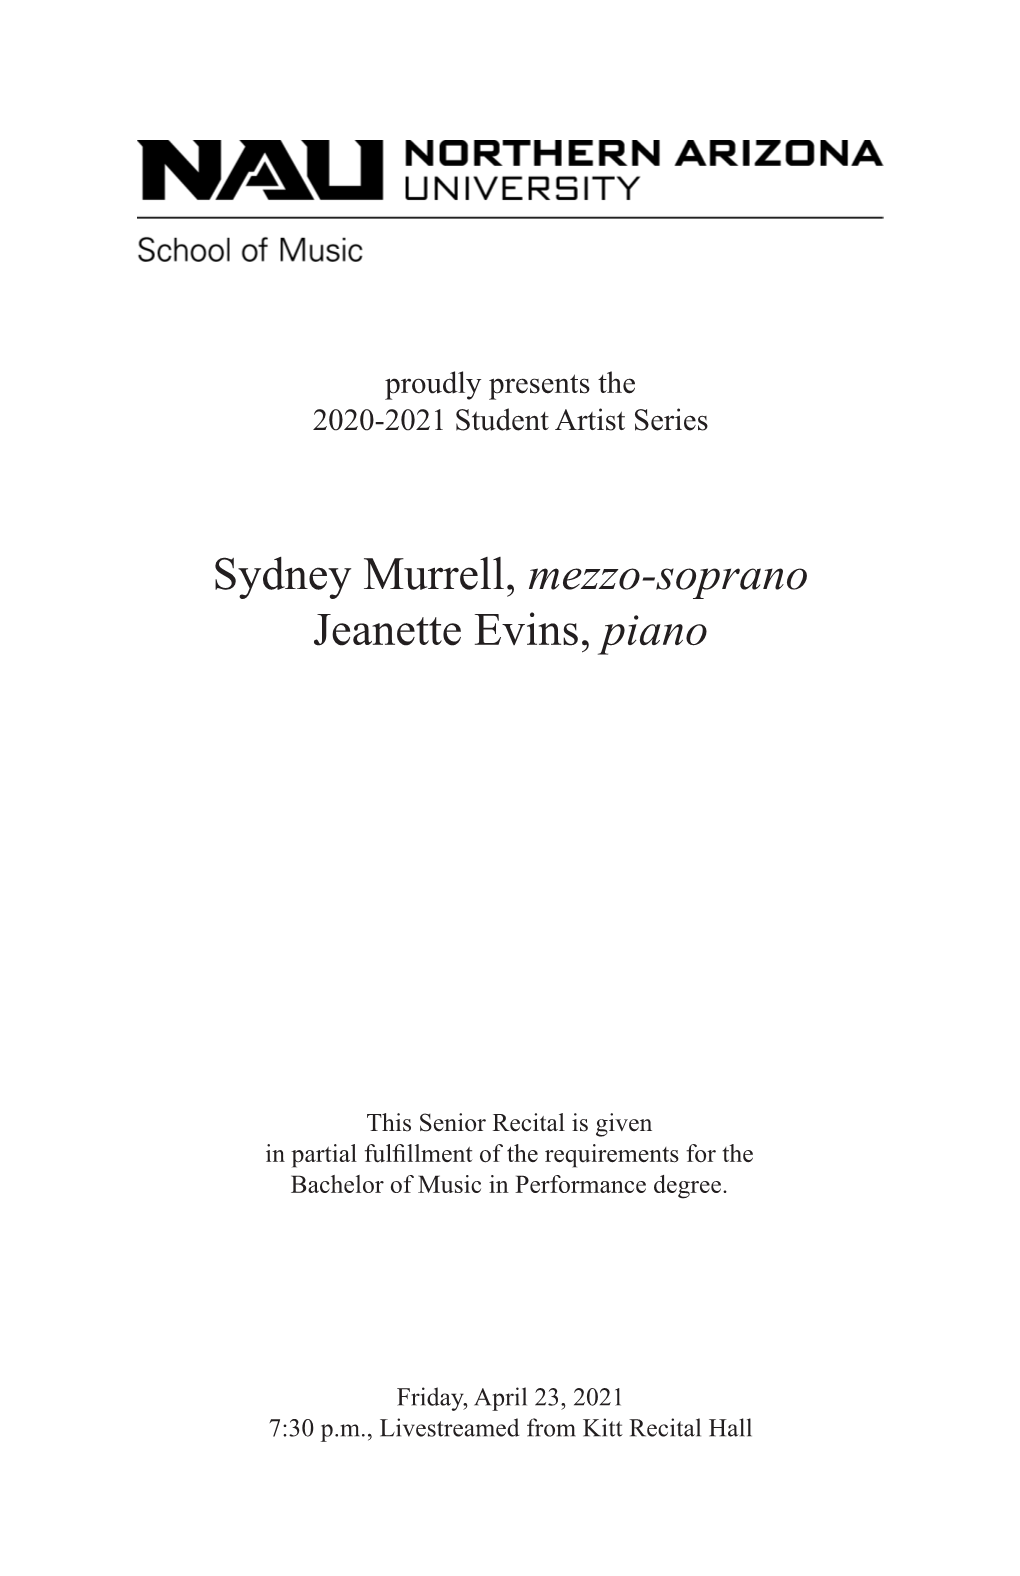 Sydney Murrell, Mezzo-Soprano Jeanette Evins, Piano